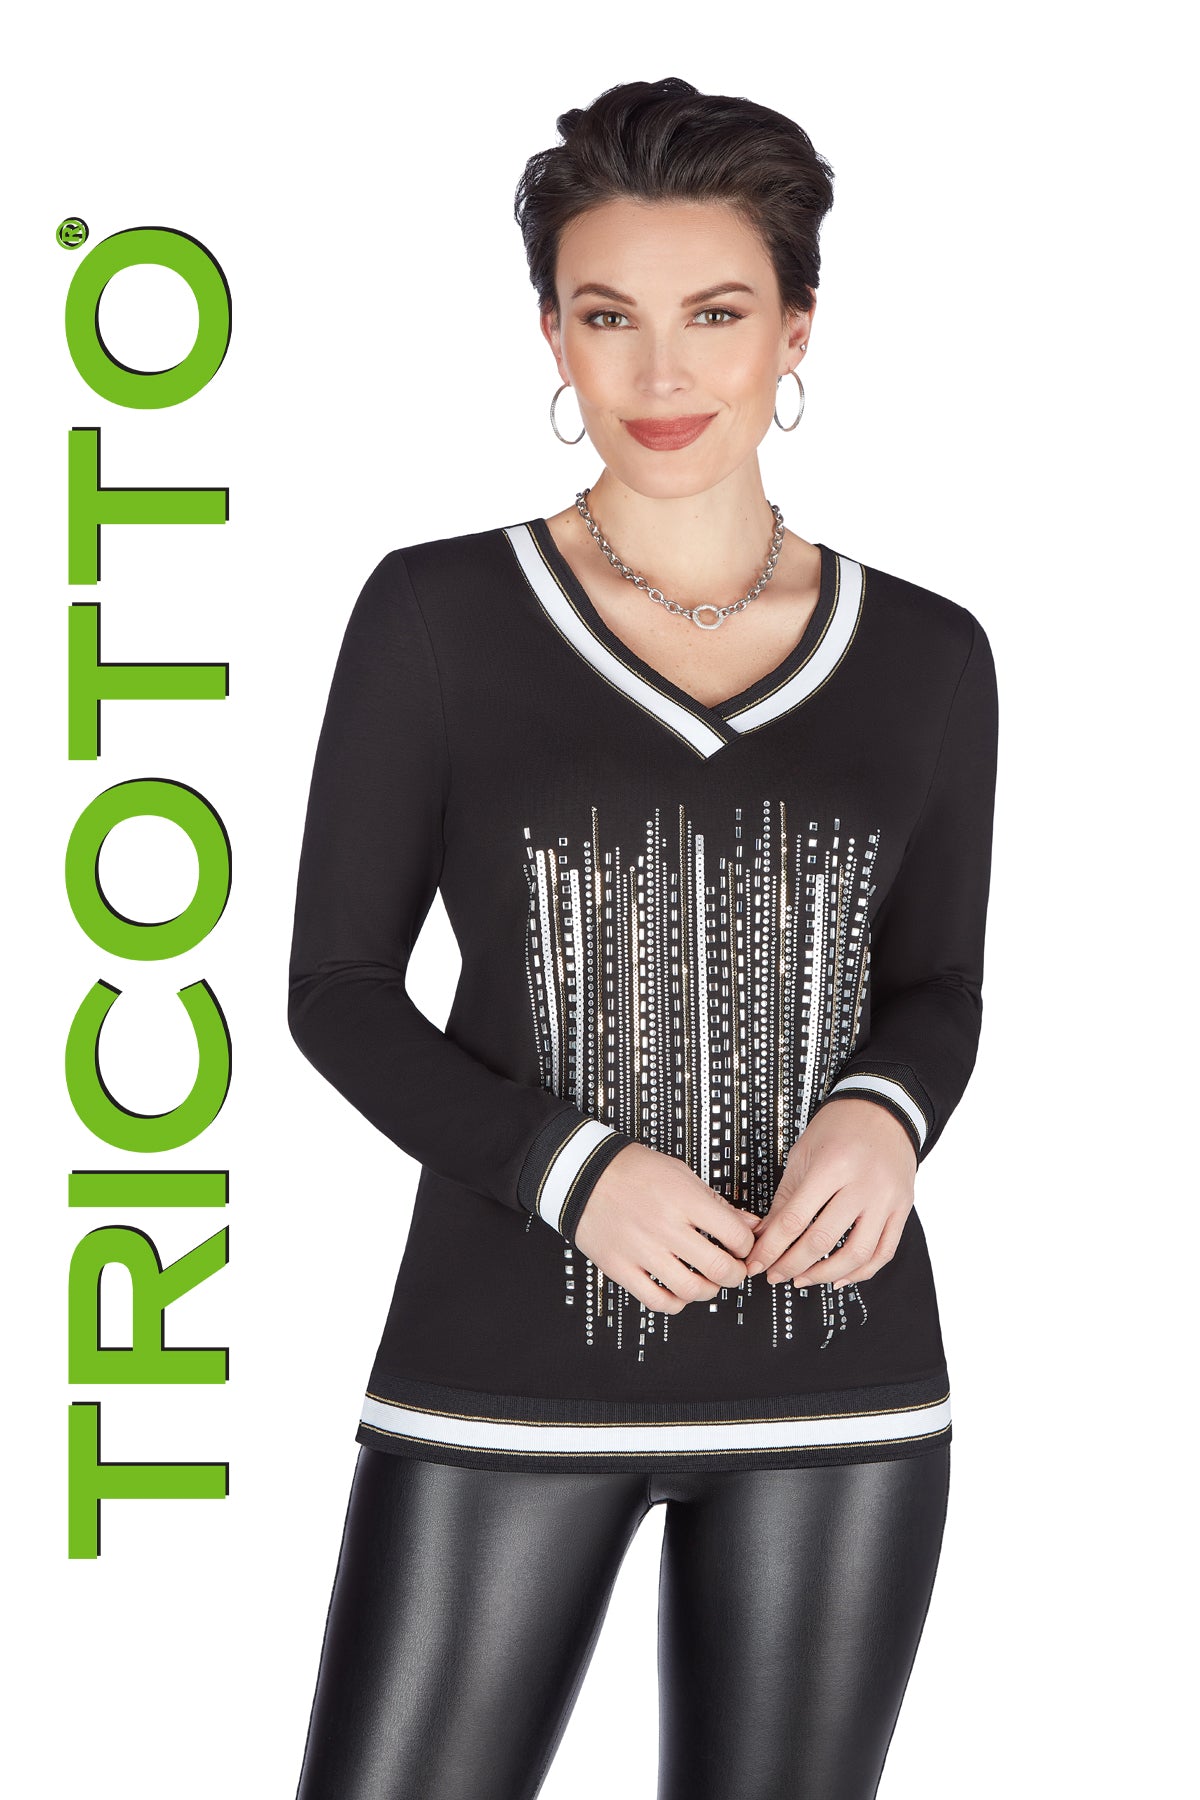 Tricotto Products - Vita Boutique